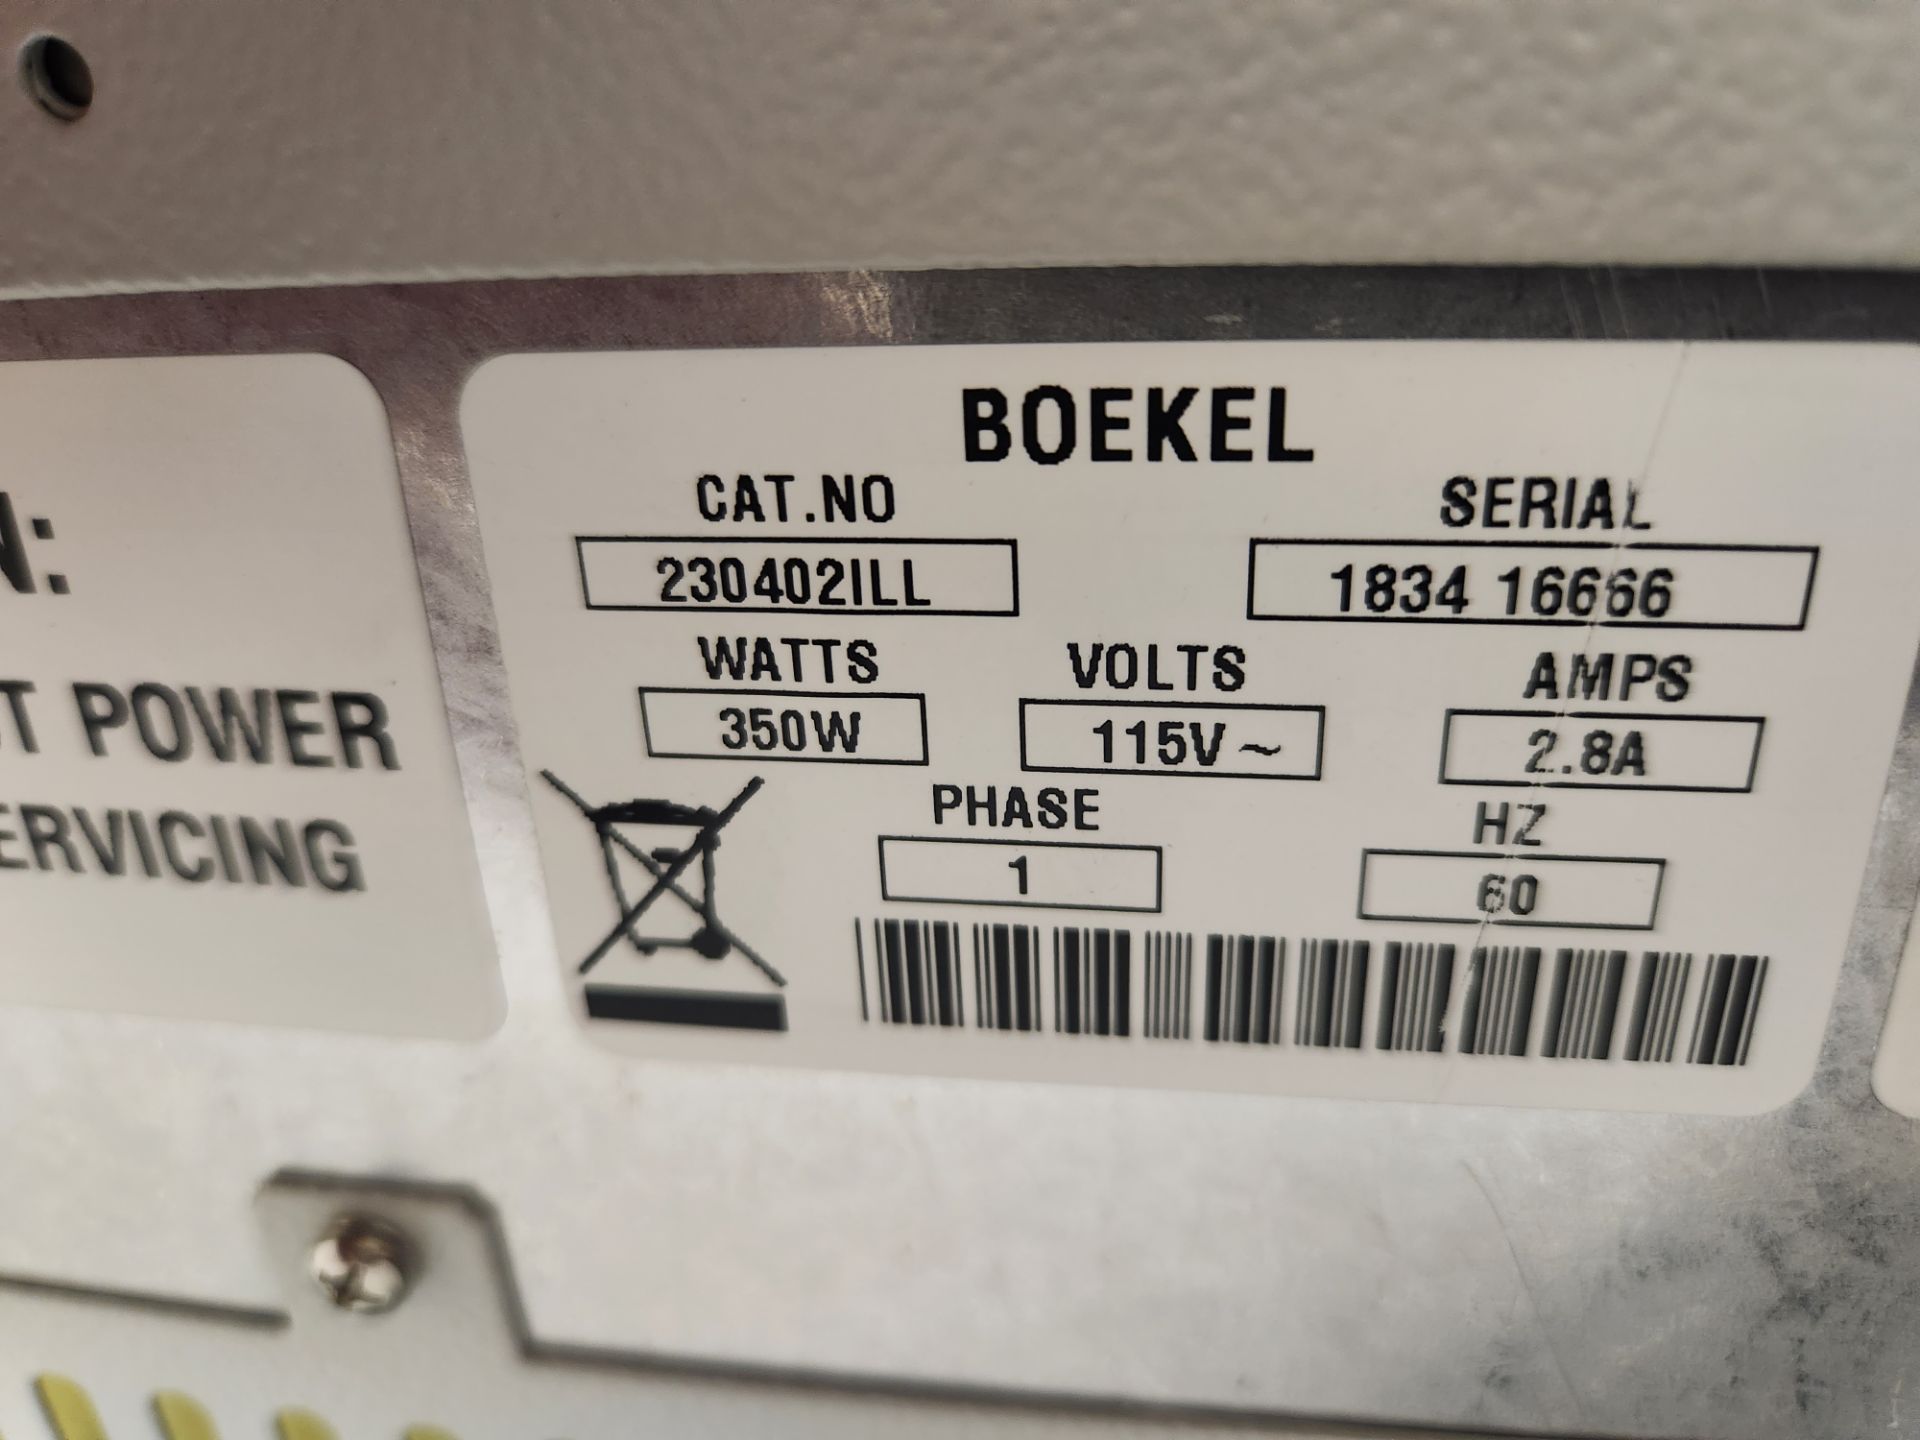 Boekel Illumina Hybridization Oven - Image 2 of 6